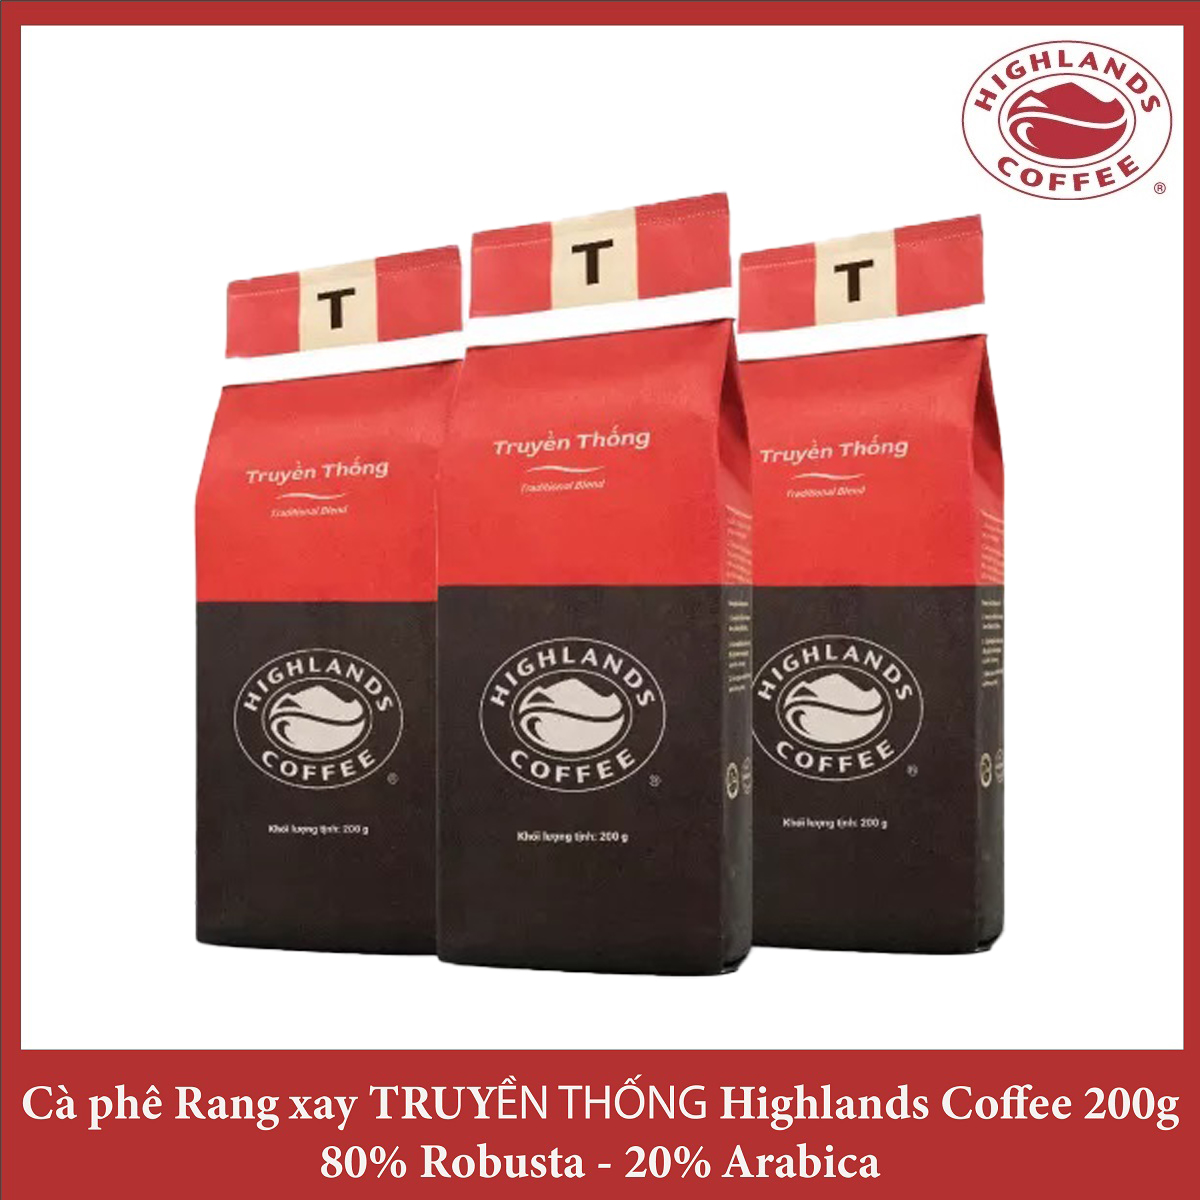 Traditional Blend Combo 3 gói Cà phê Rang xay Truyền thống Highlands Coffee 200g